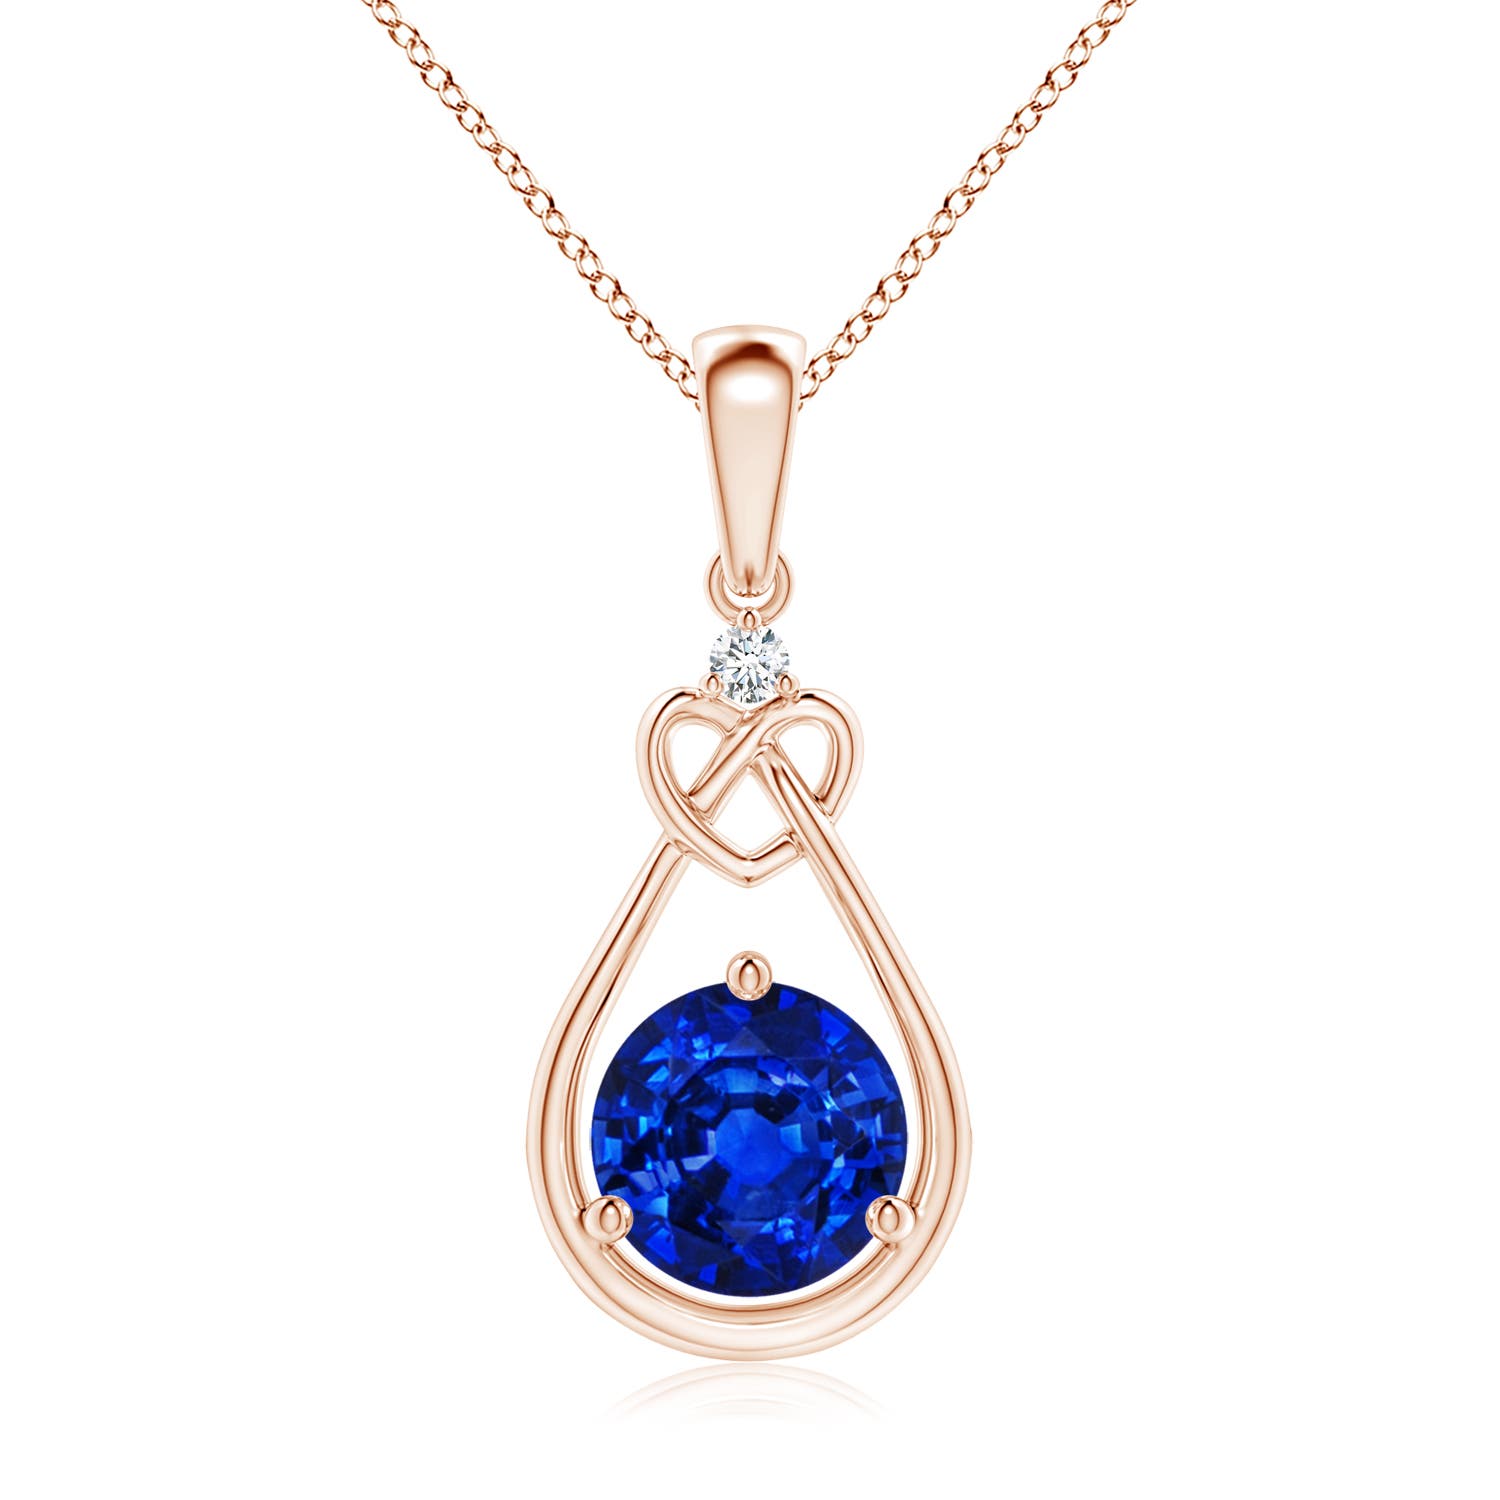 AAAA - Blue Sapphire / 1.62 CT / 14 KT Rose Gold